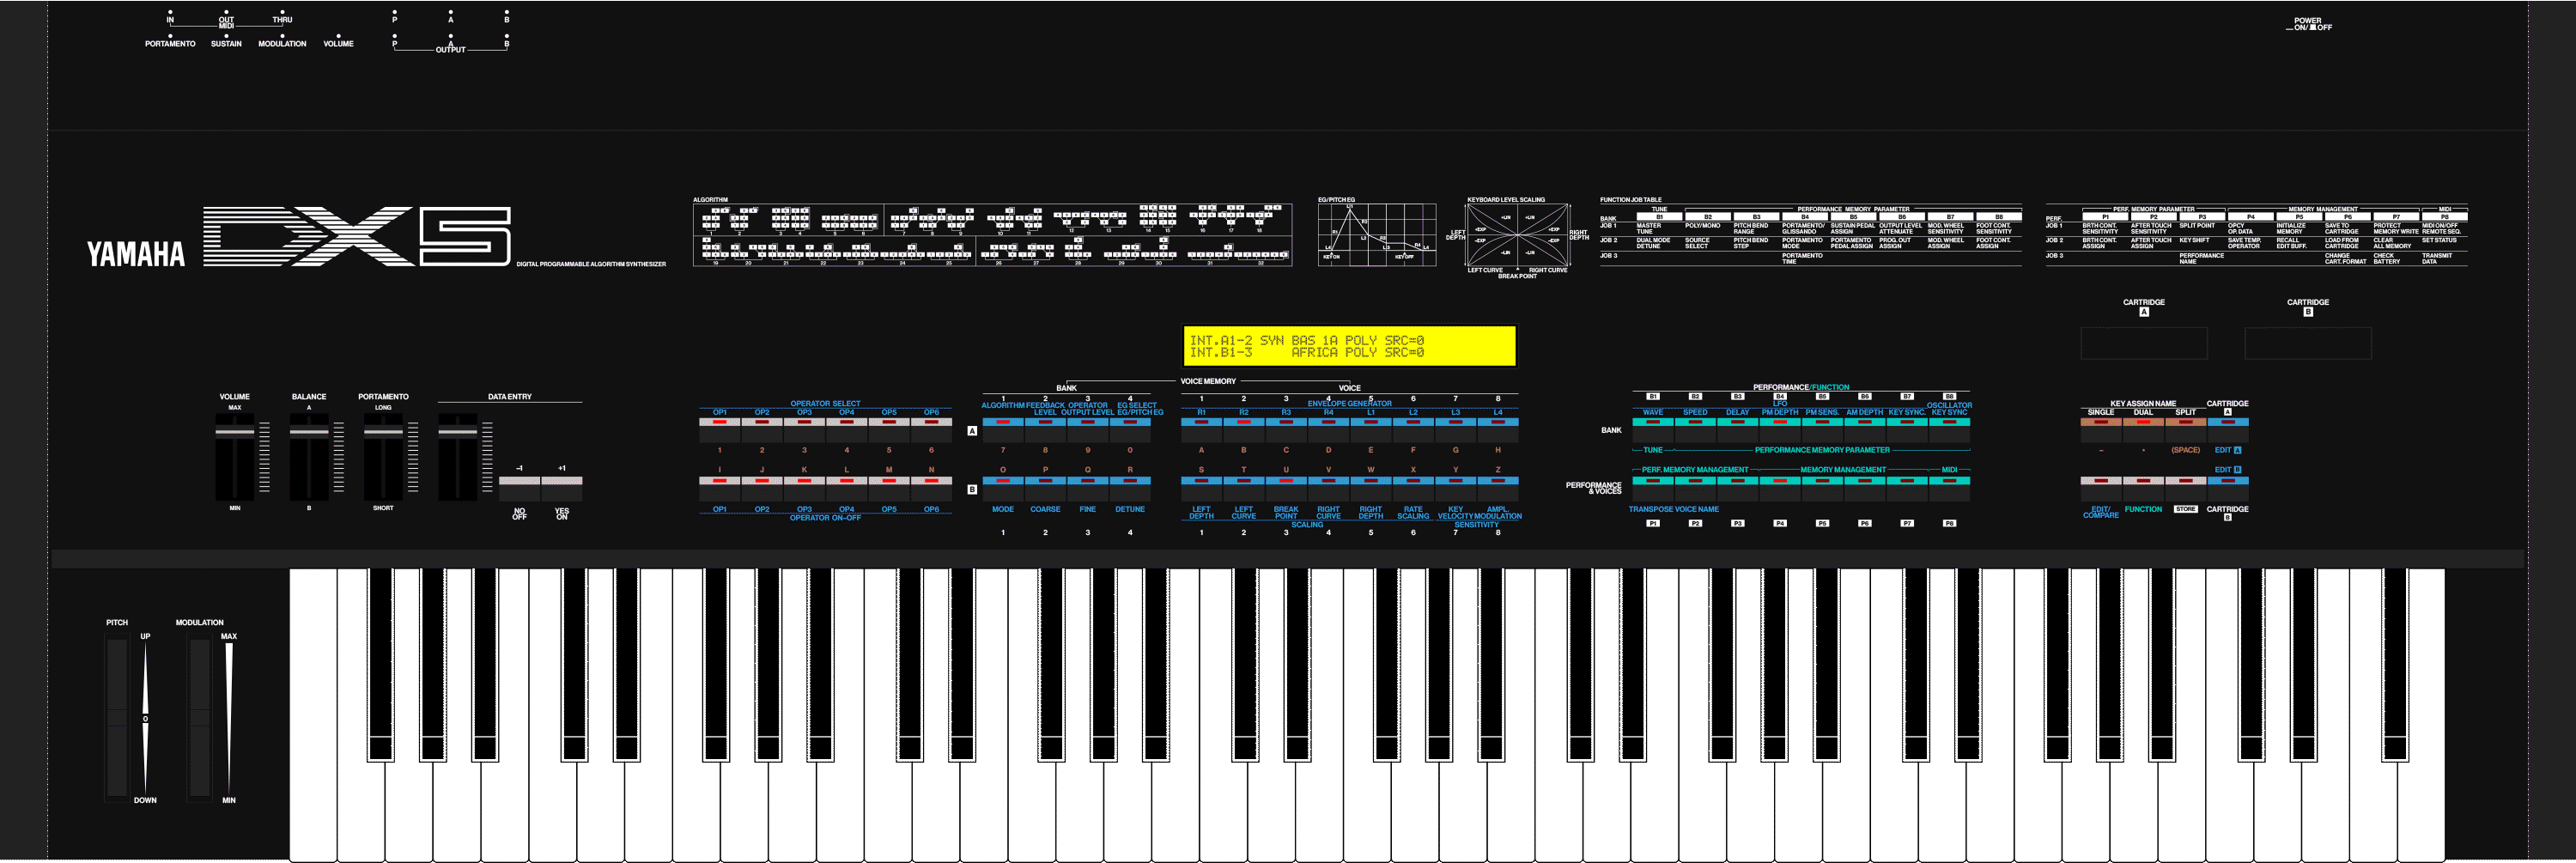 Yamaha DX5 vintage synthesizer